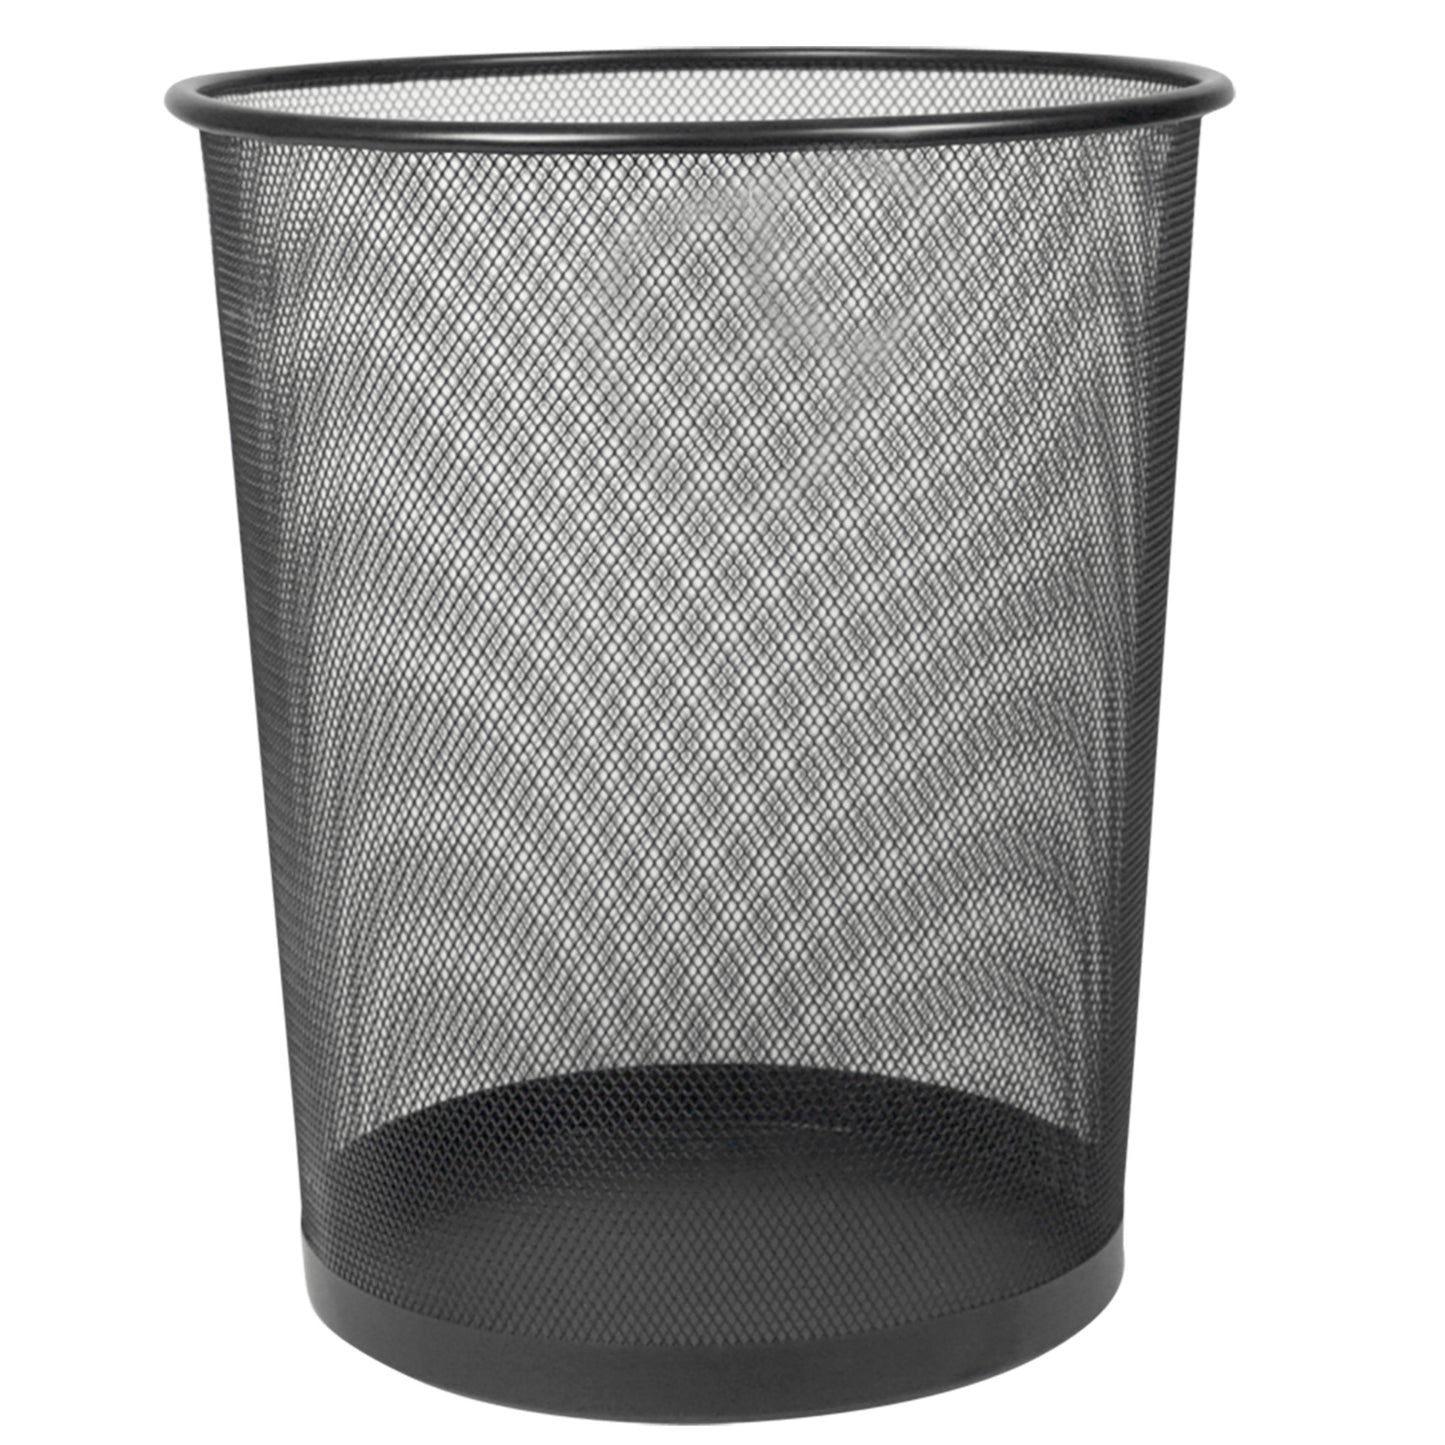 Home Basics Mesh Steel Waste Basket, Black - Black